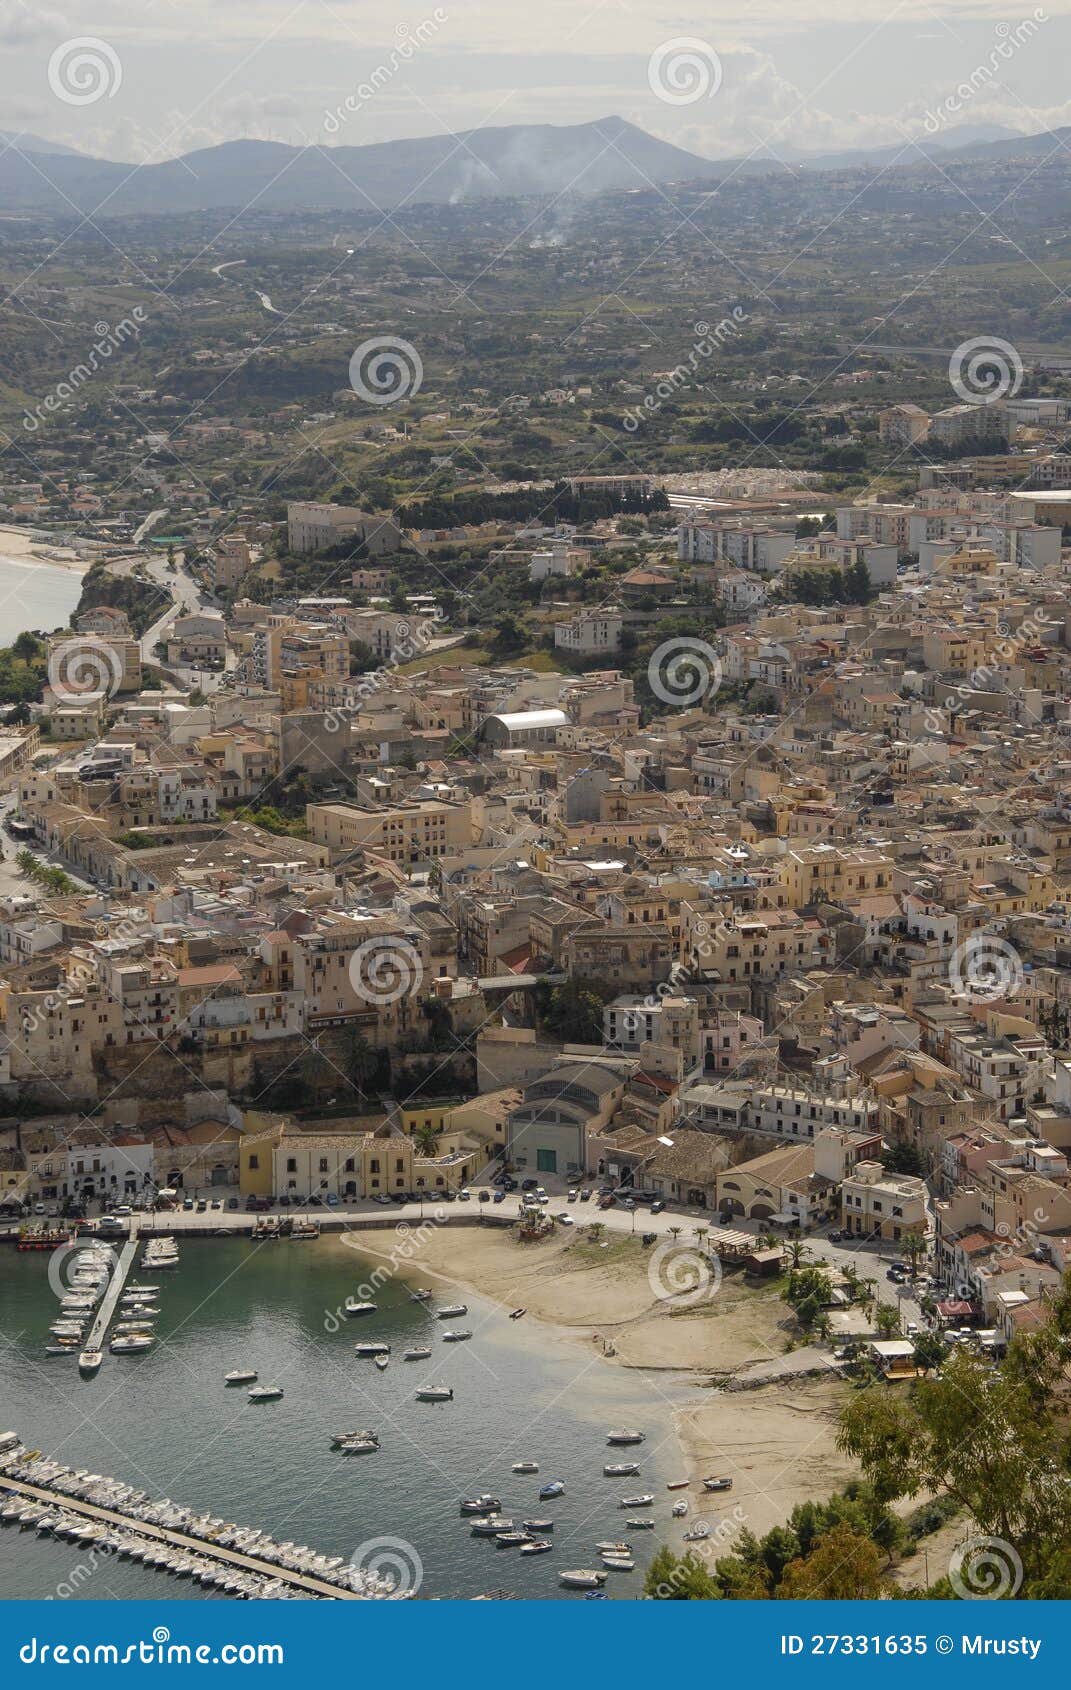 Castelammare del Golfo. Castellammare del Golfo is een stad en comune in de Provincie van Trapan van Sicilië. De naam is ruwweg vertaalde Overzeese Vesting van de Golf, die uit de middeleeuwse vesting in de haven voortkomt. De watermassa het zit op ook neemt zijn naam van de vesting, Golfo Di Castellammare.